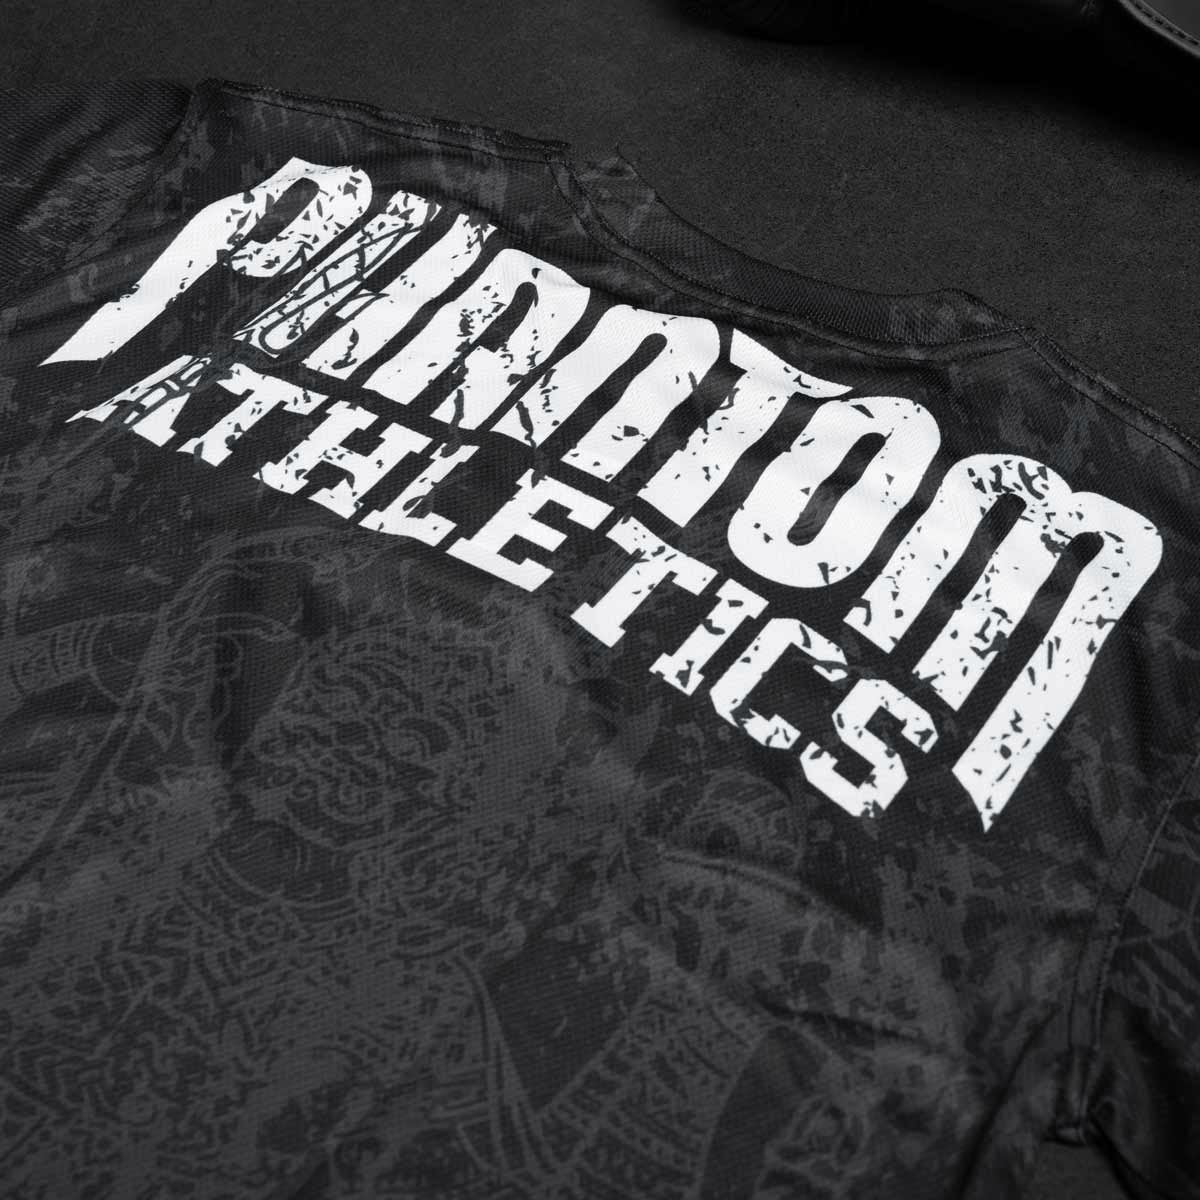 Phantom EVO Trainingsshirt im Muay Thai Design für Kampfsport Training. Mit thailändischer Schrift und Sak Yant Grafiken und großem Phantom Athletics Schriftzug.